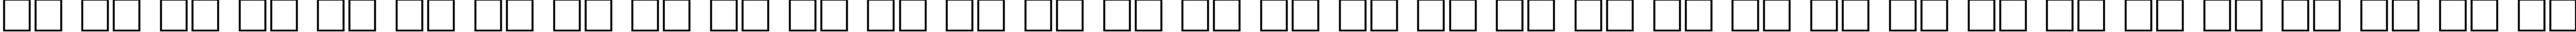 Пример написания русского алфавита шрифтом Regata